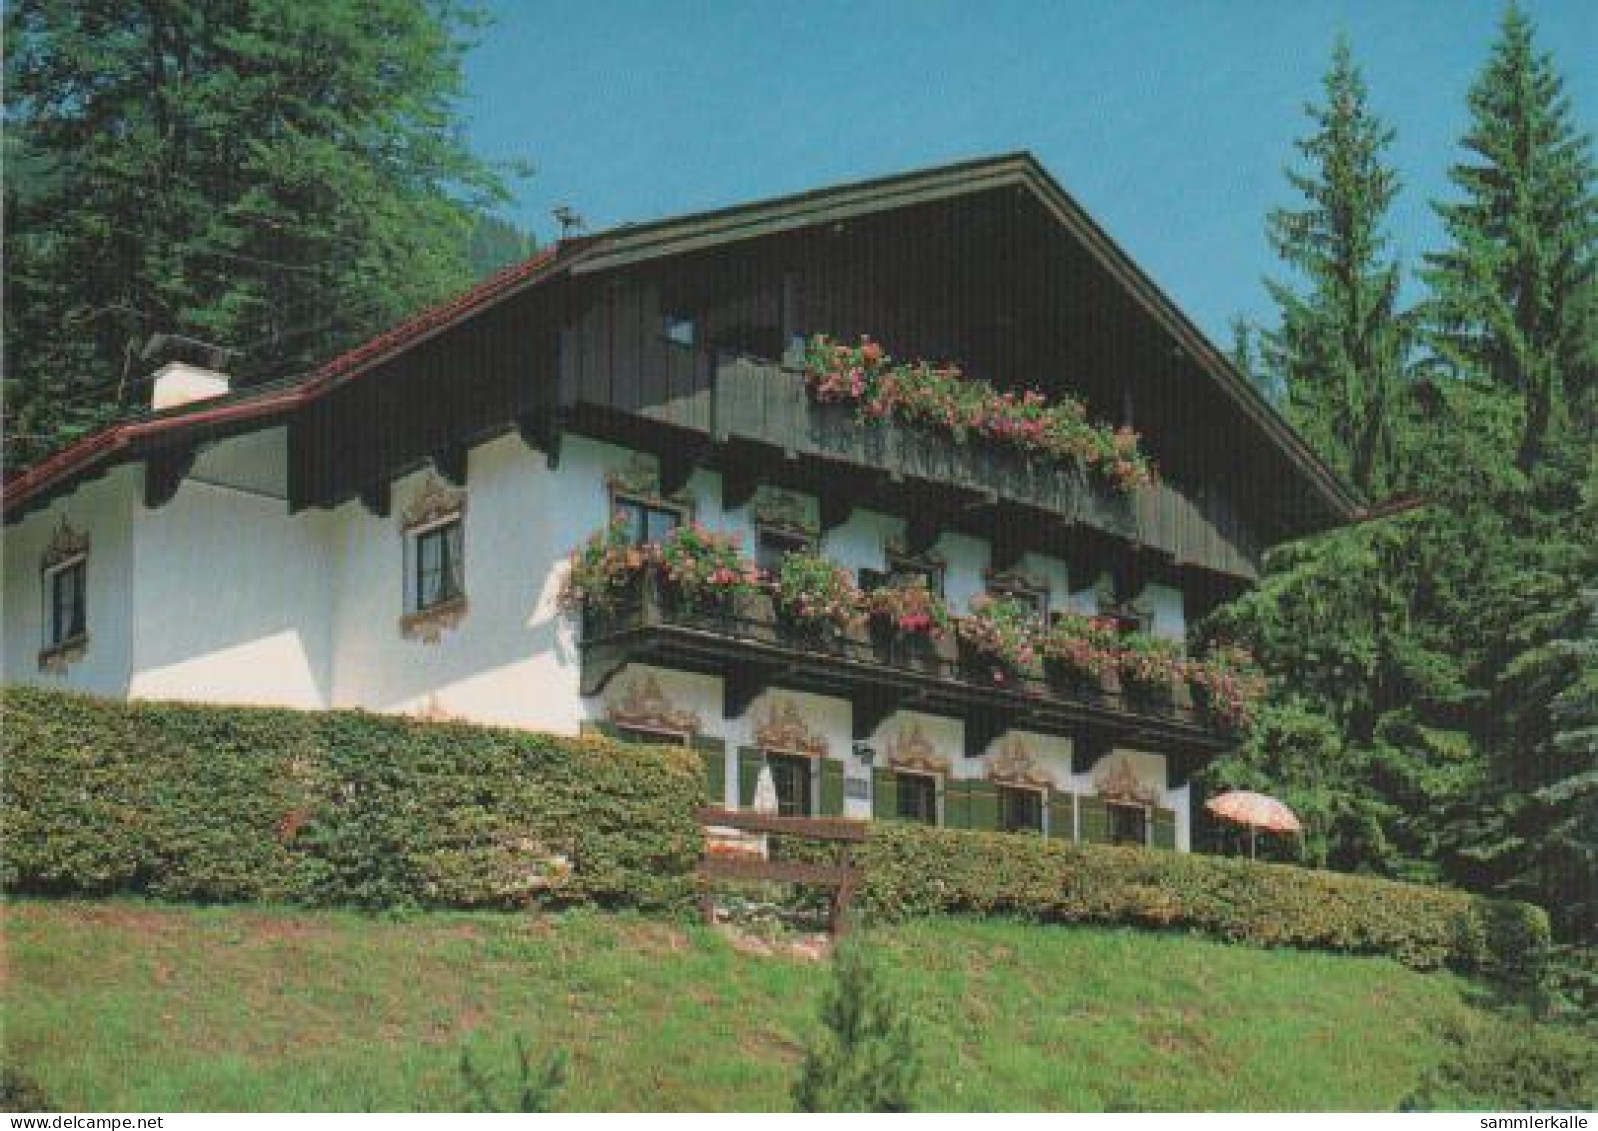 704 - Allianz-Bergheim, Bayrischzell - 1992 - Miesbach